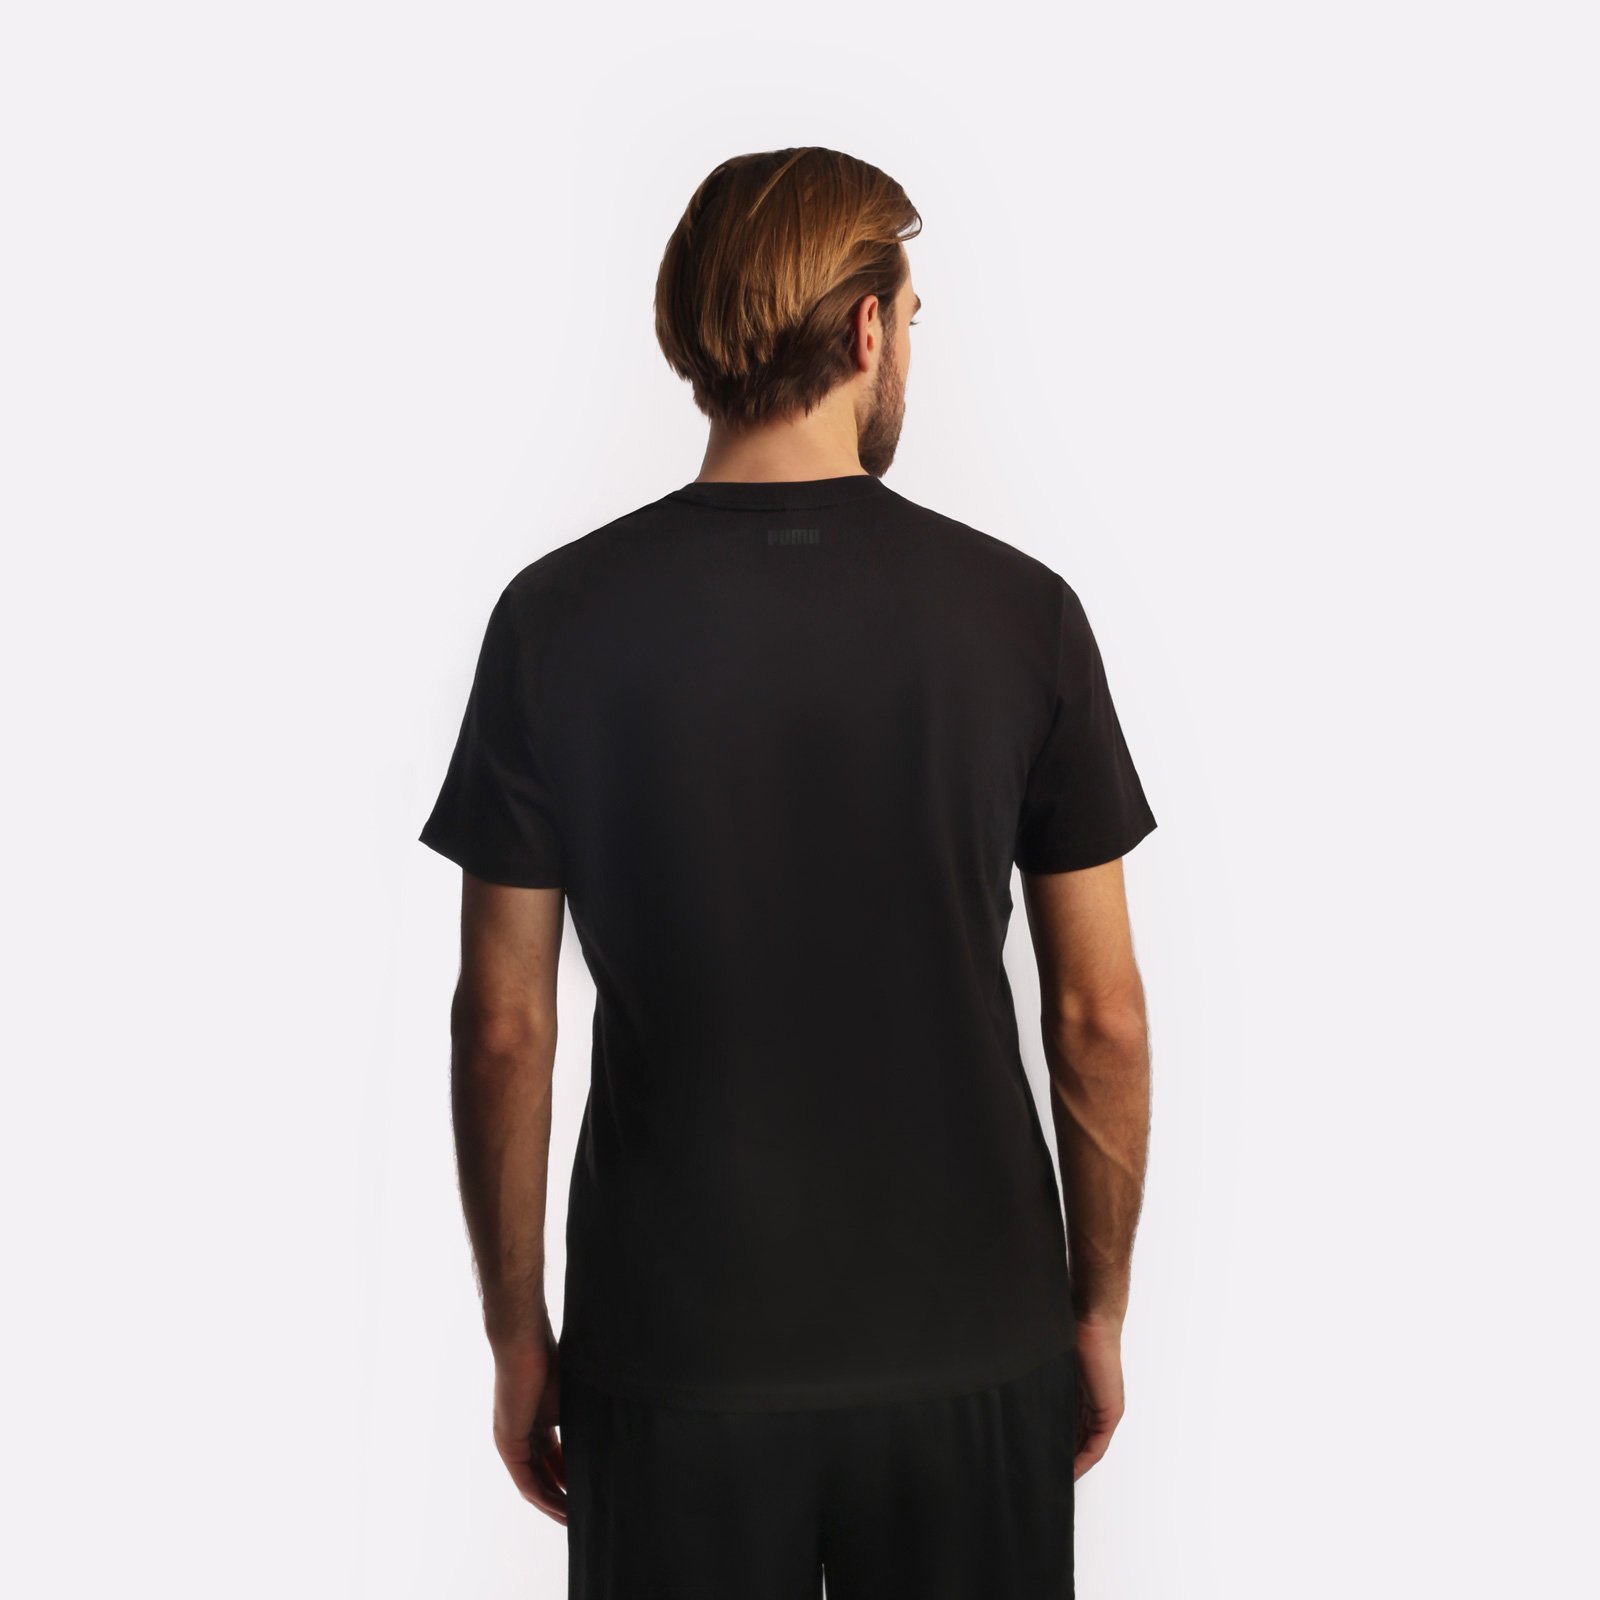 мужская футболка PUMA Franchise Core Tee  (53856901)  - цена, описание, фото 2